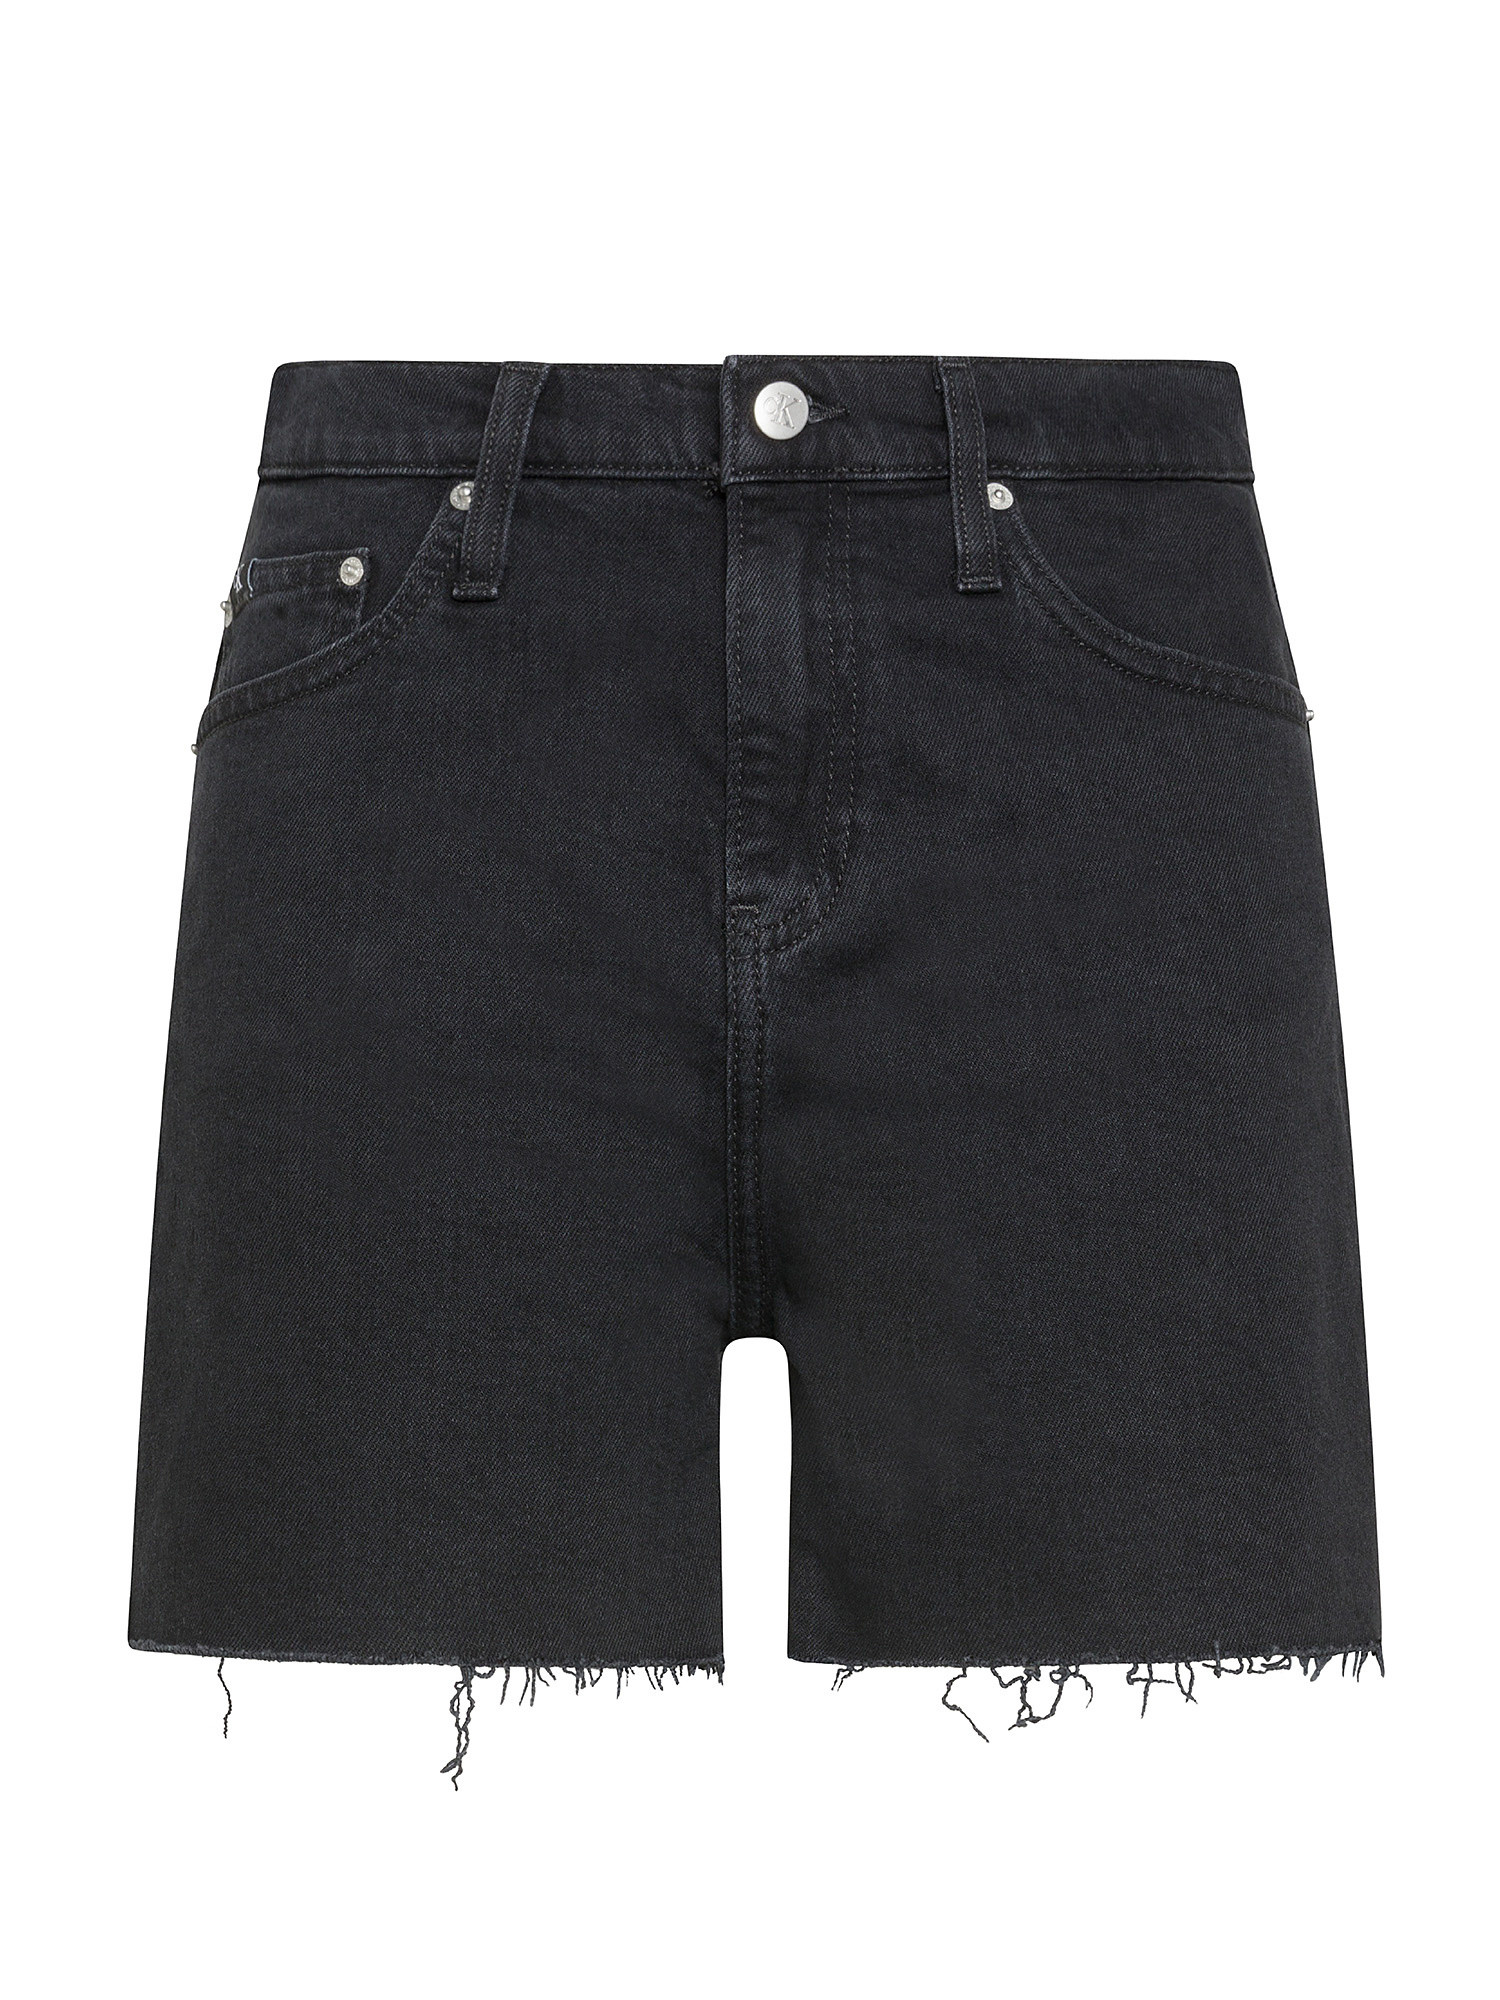 Calvin Klein Jeans - Denim shorts, Black, large image number 0